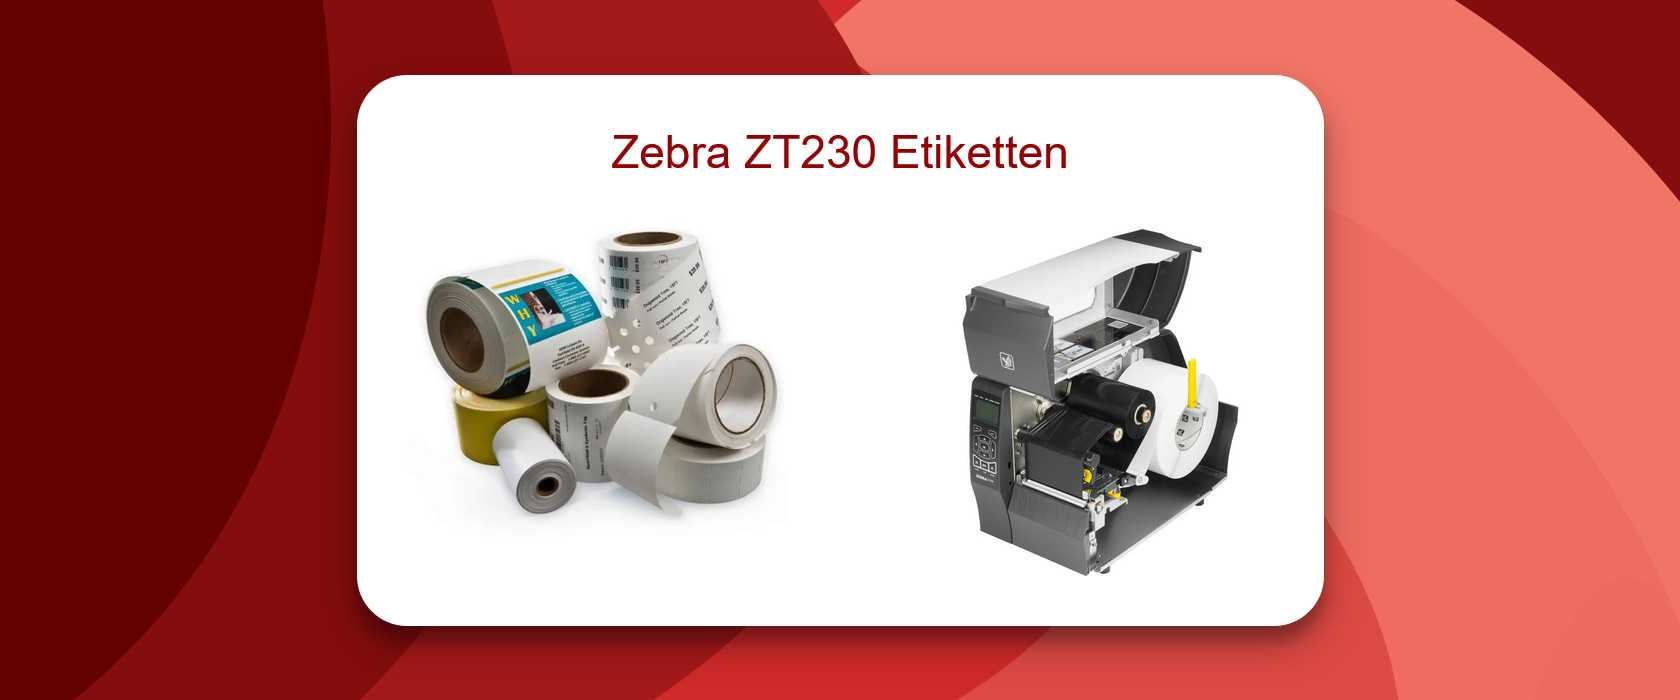 Zebra ZT230 Etiketten 